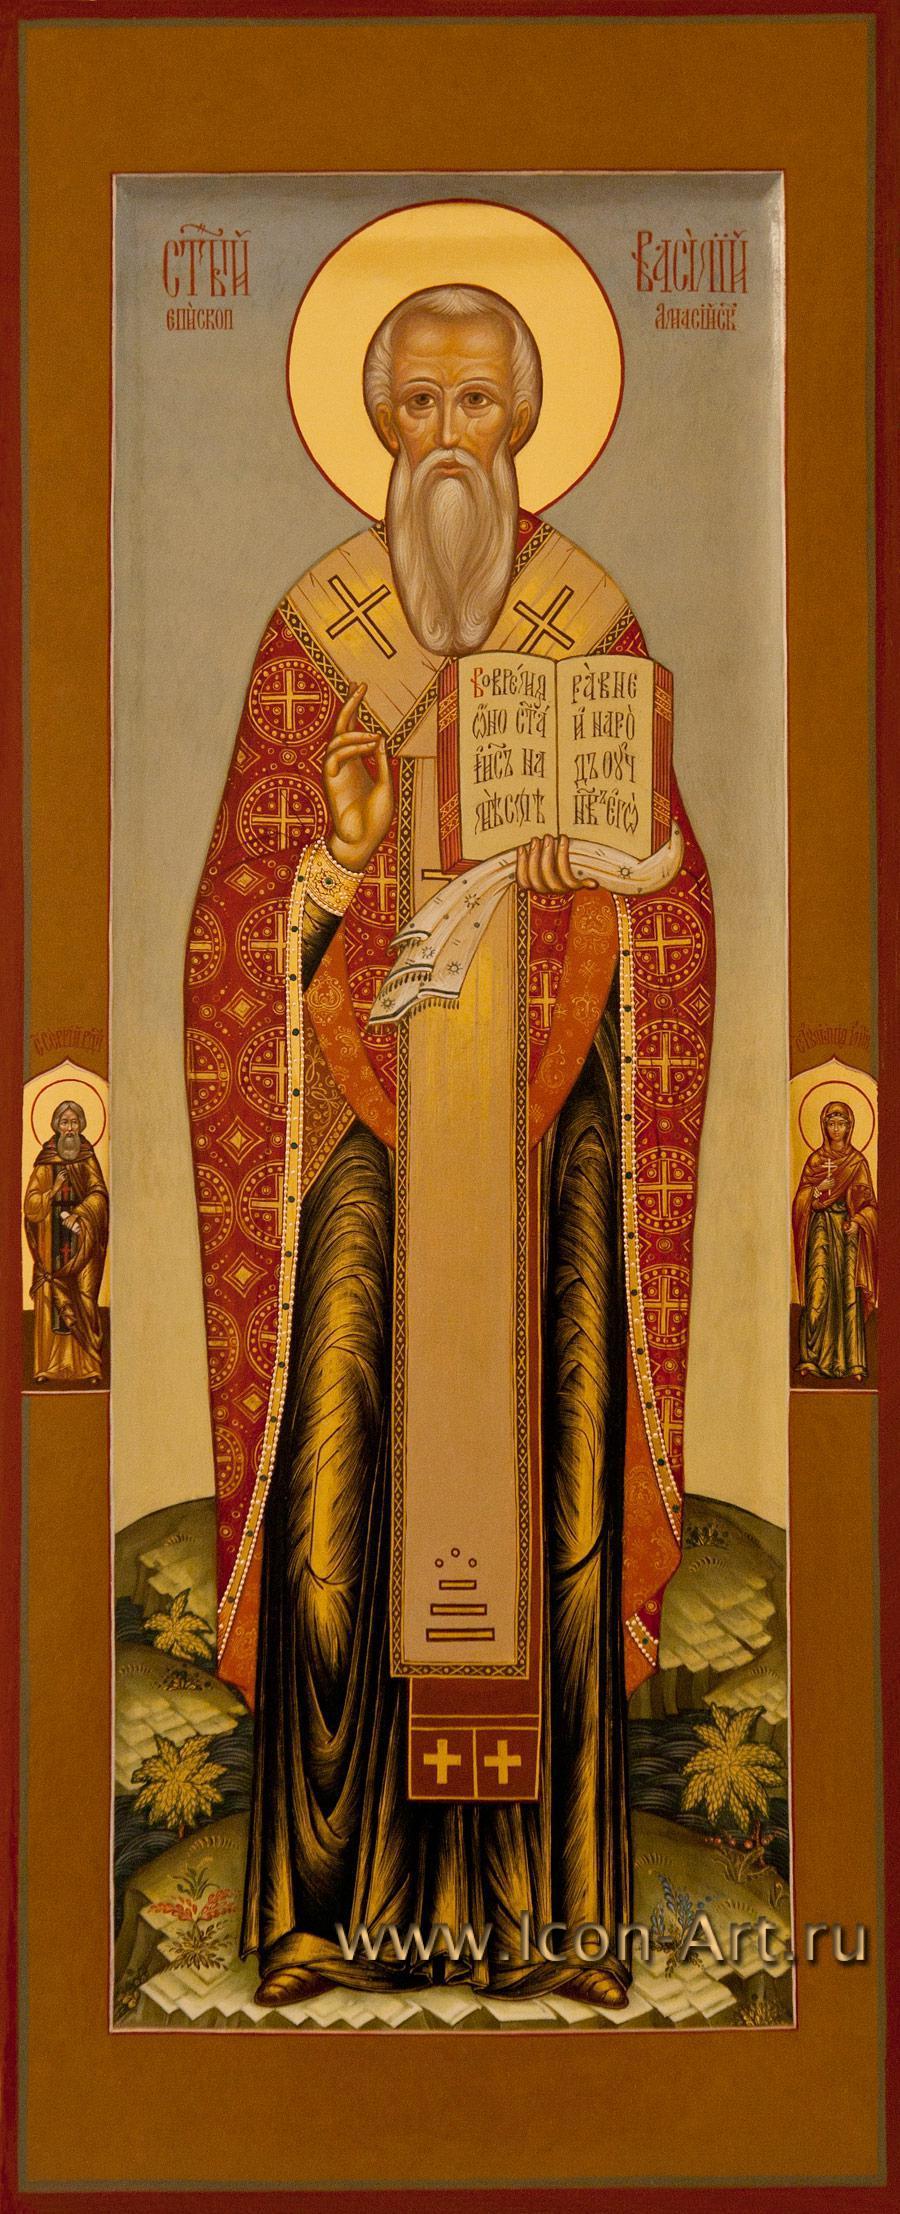 Василий Амасийский, епископ, священномученик (ок. 322)